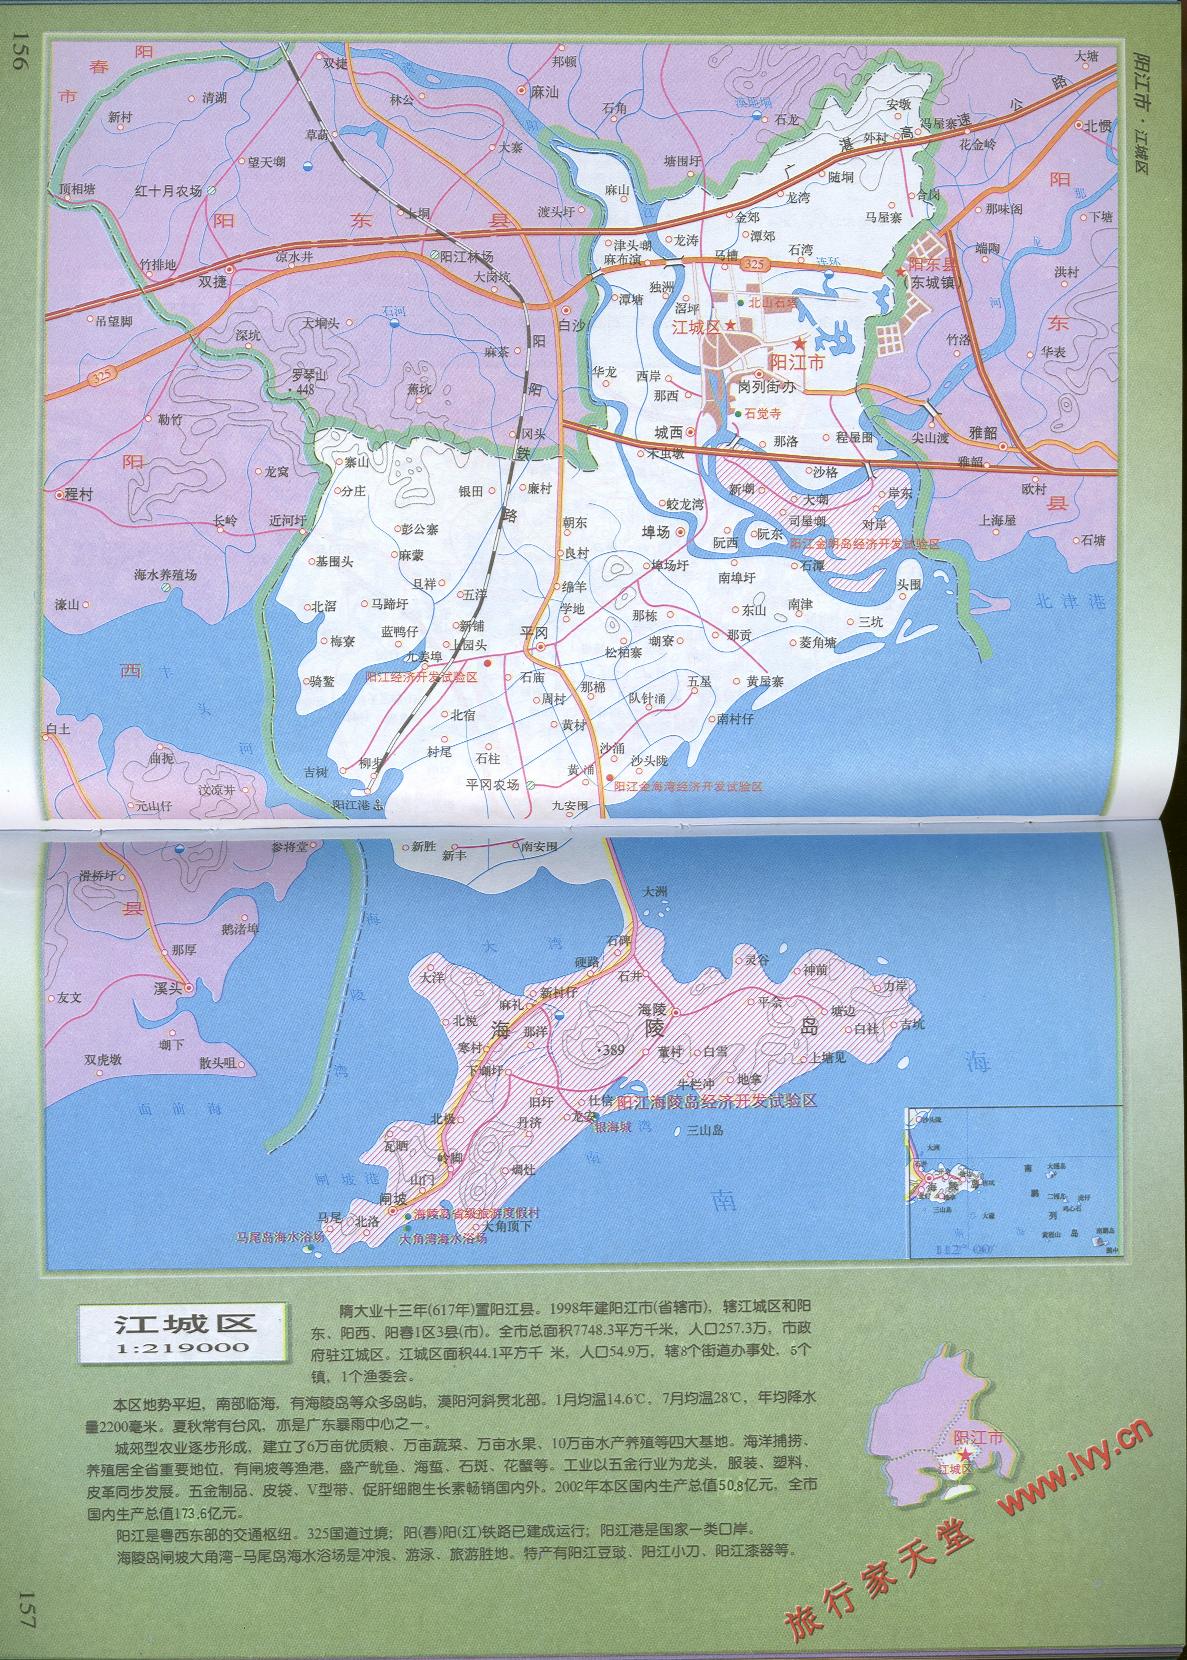 阳江市地图全图高清版下载|广东省阳江市地图高清版下载jpg格式_ 绿色